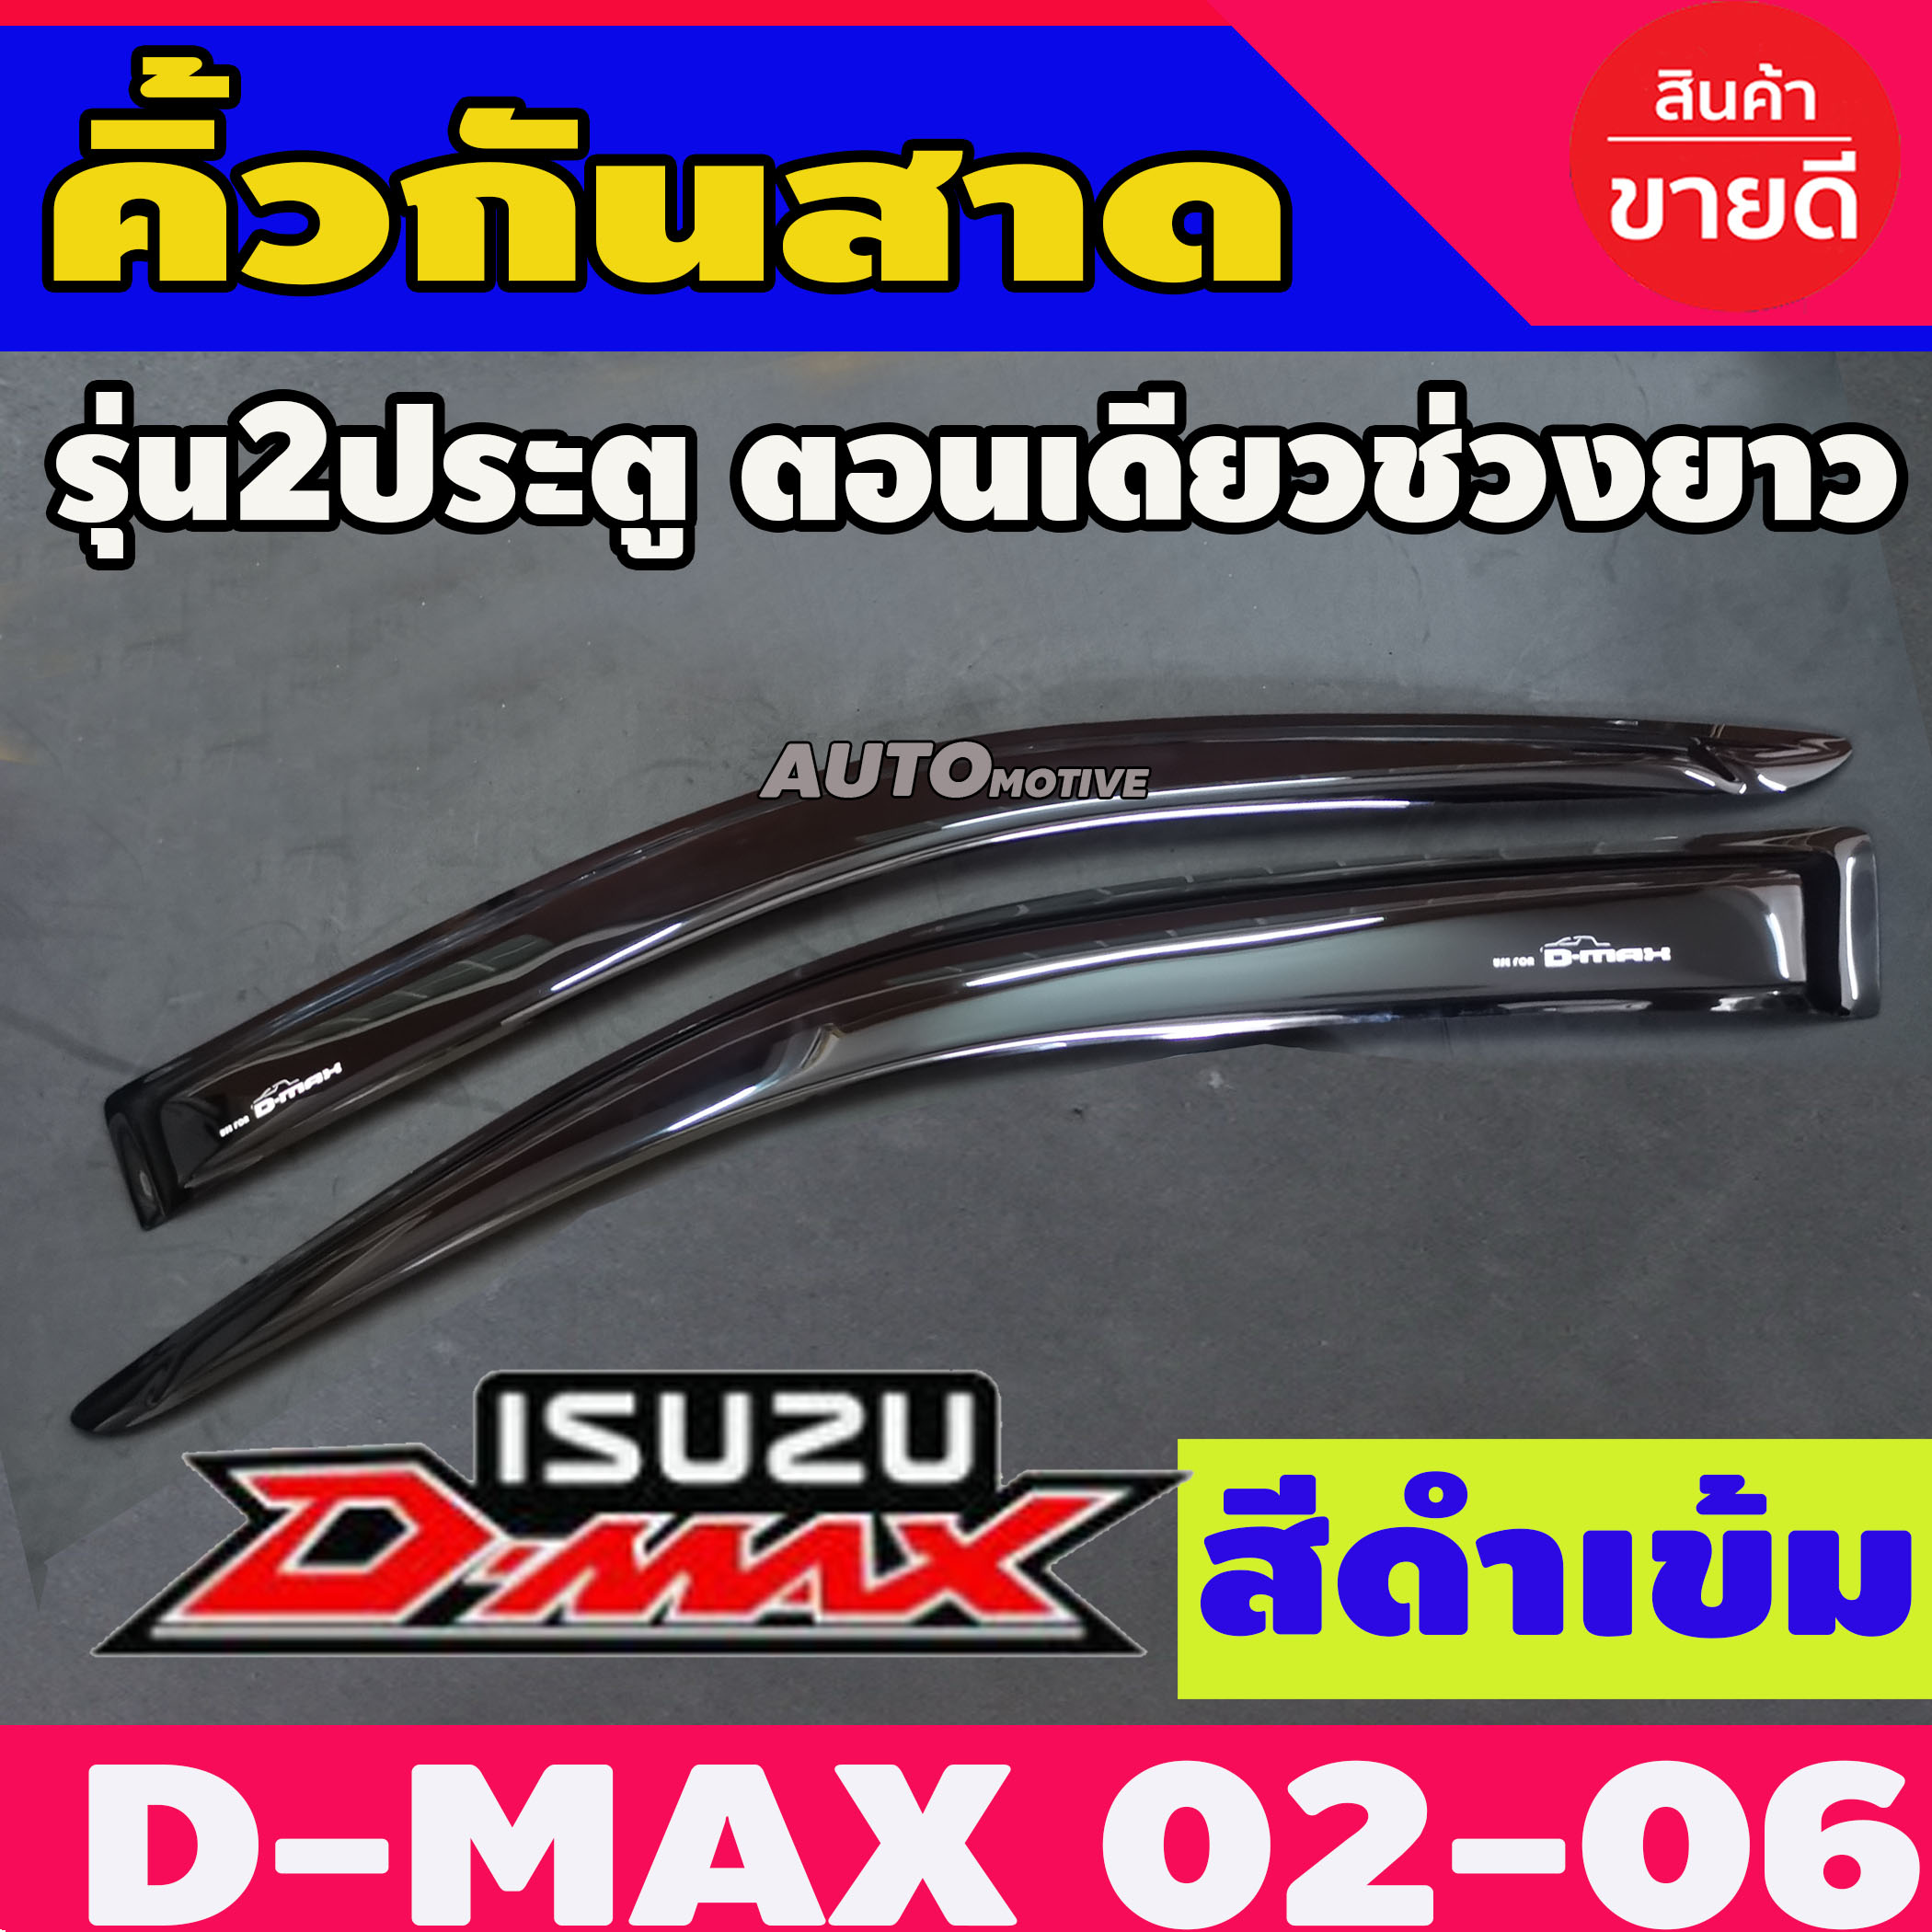 DMAX 2003-2011 คิ้วกันสาดรถยนต์ กันสาดรถกระบะ D-max 2002 2003 2004 2005 2006 2007-2011 ตอนเดียว